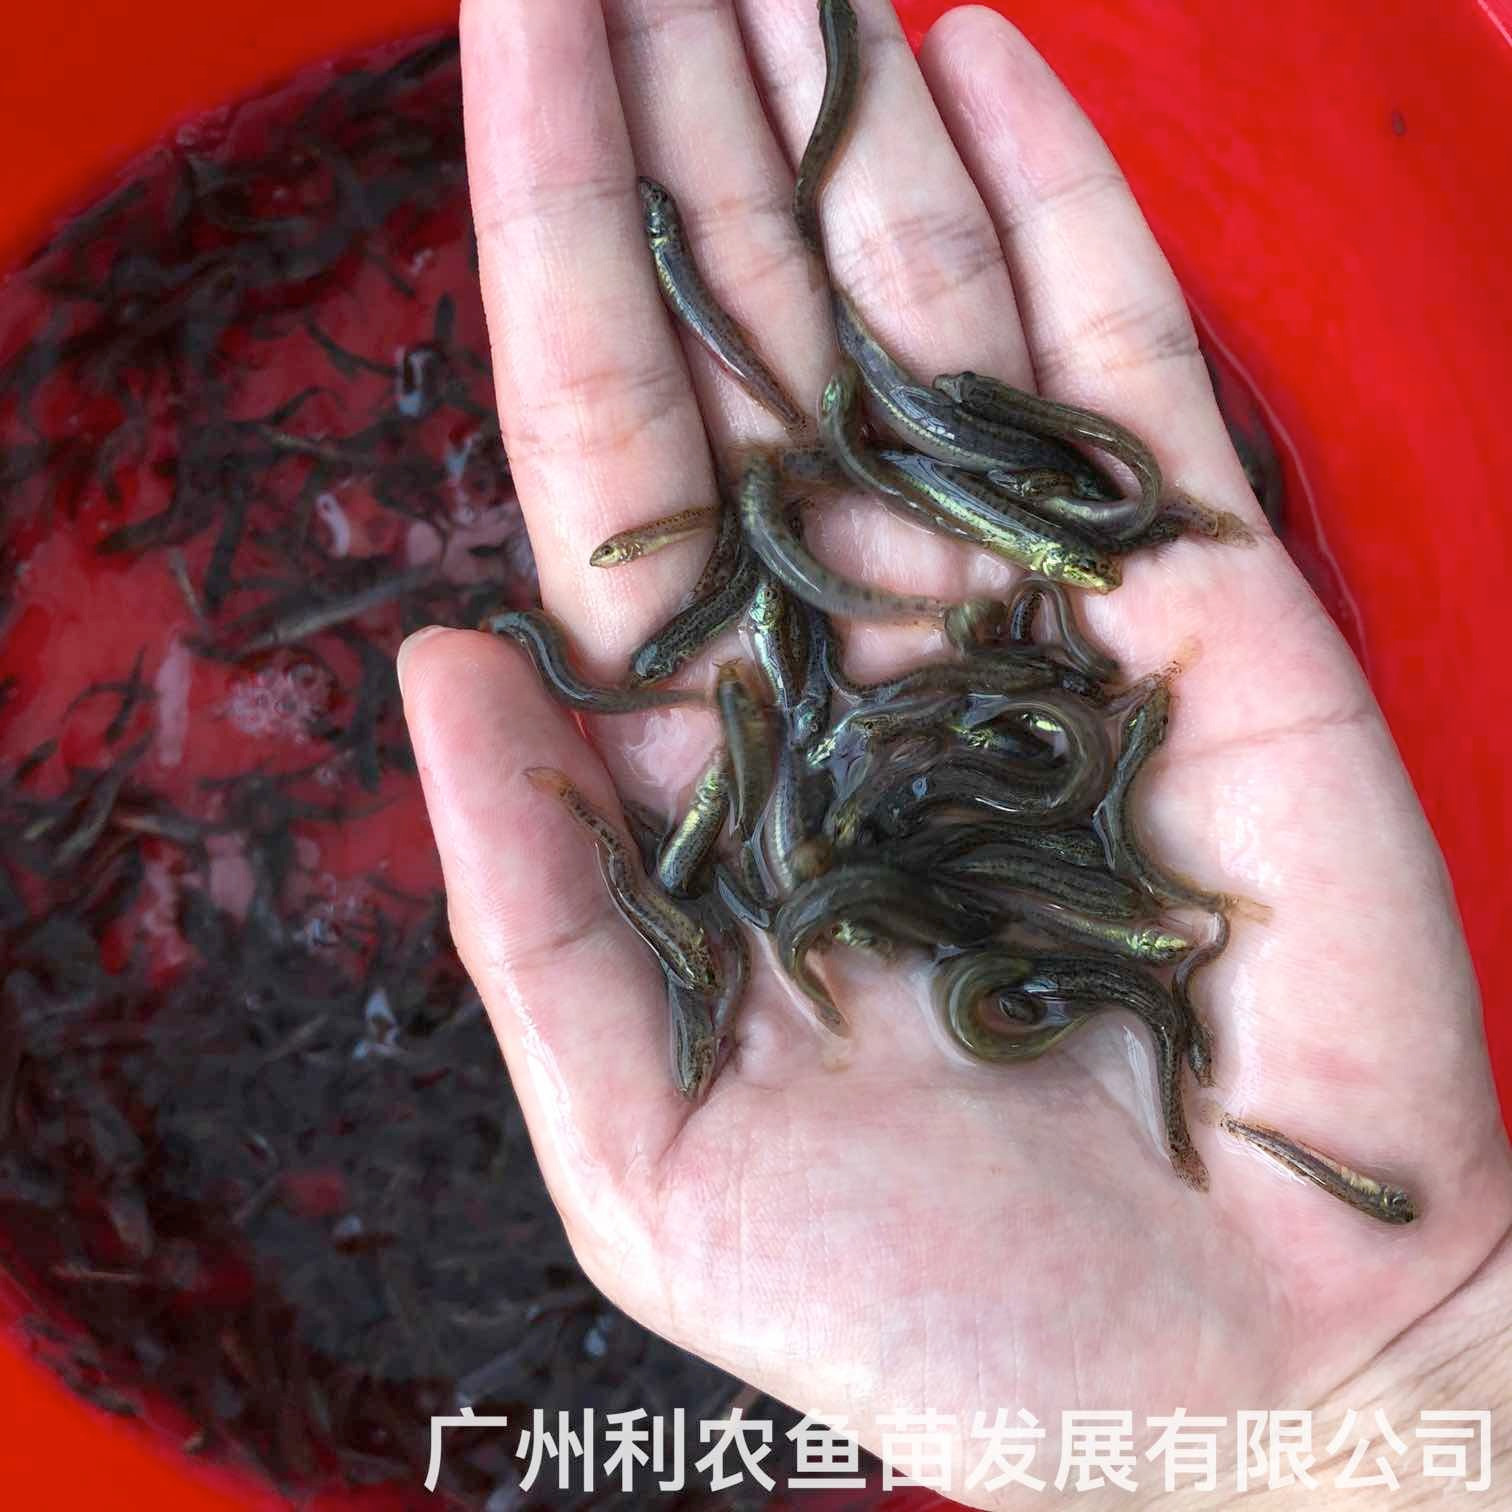 江西萍乡台湾泥鳅苗出售出售江西吉安泥鳅鱼苗批发养殖基地